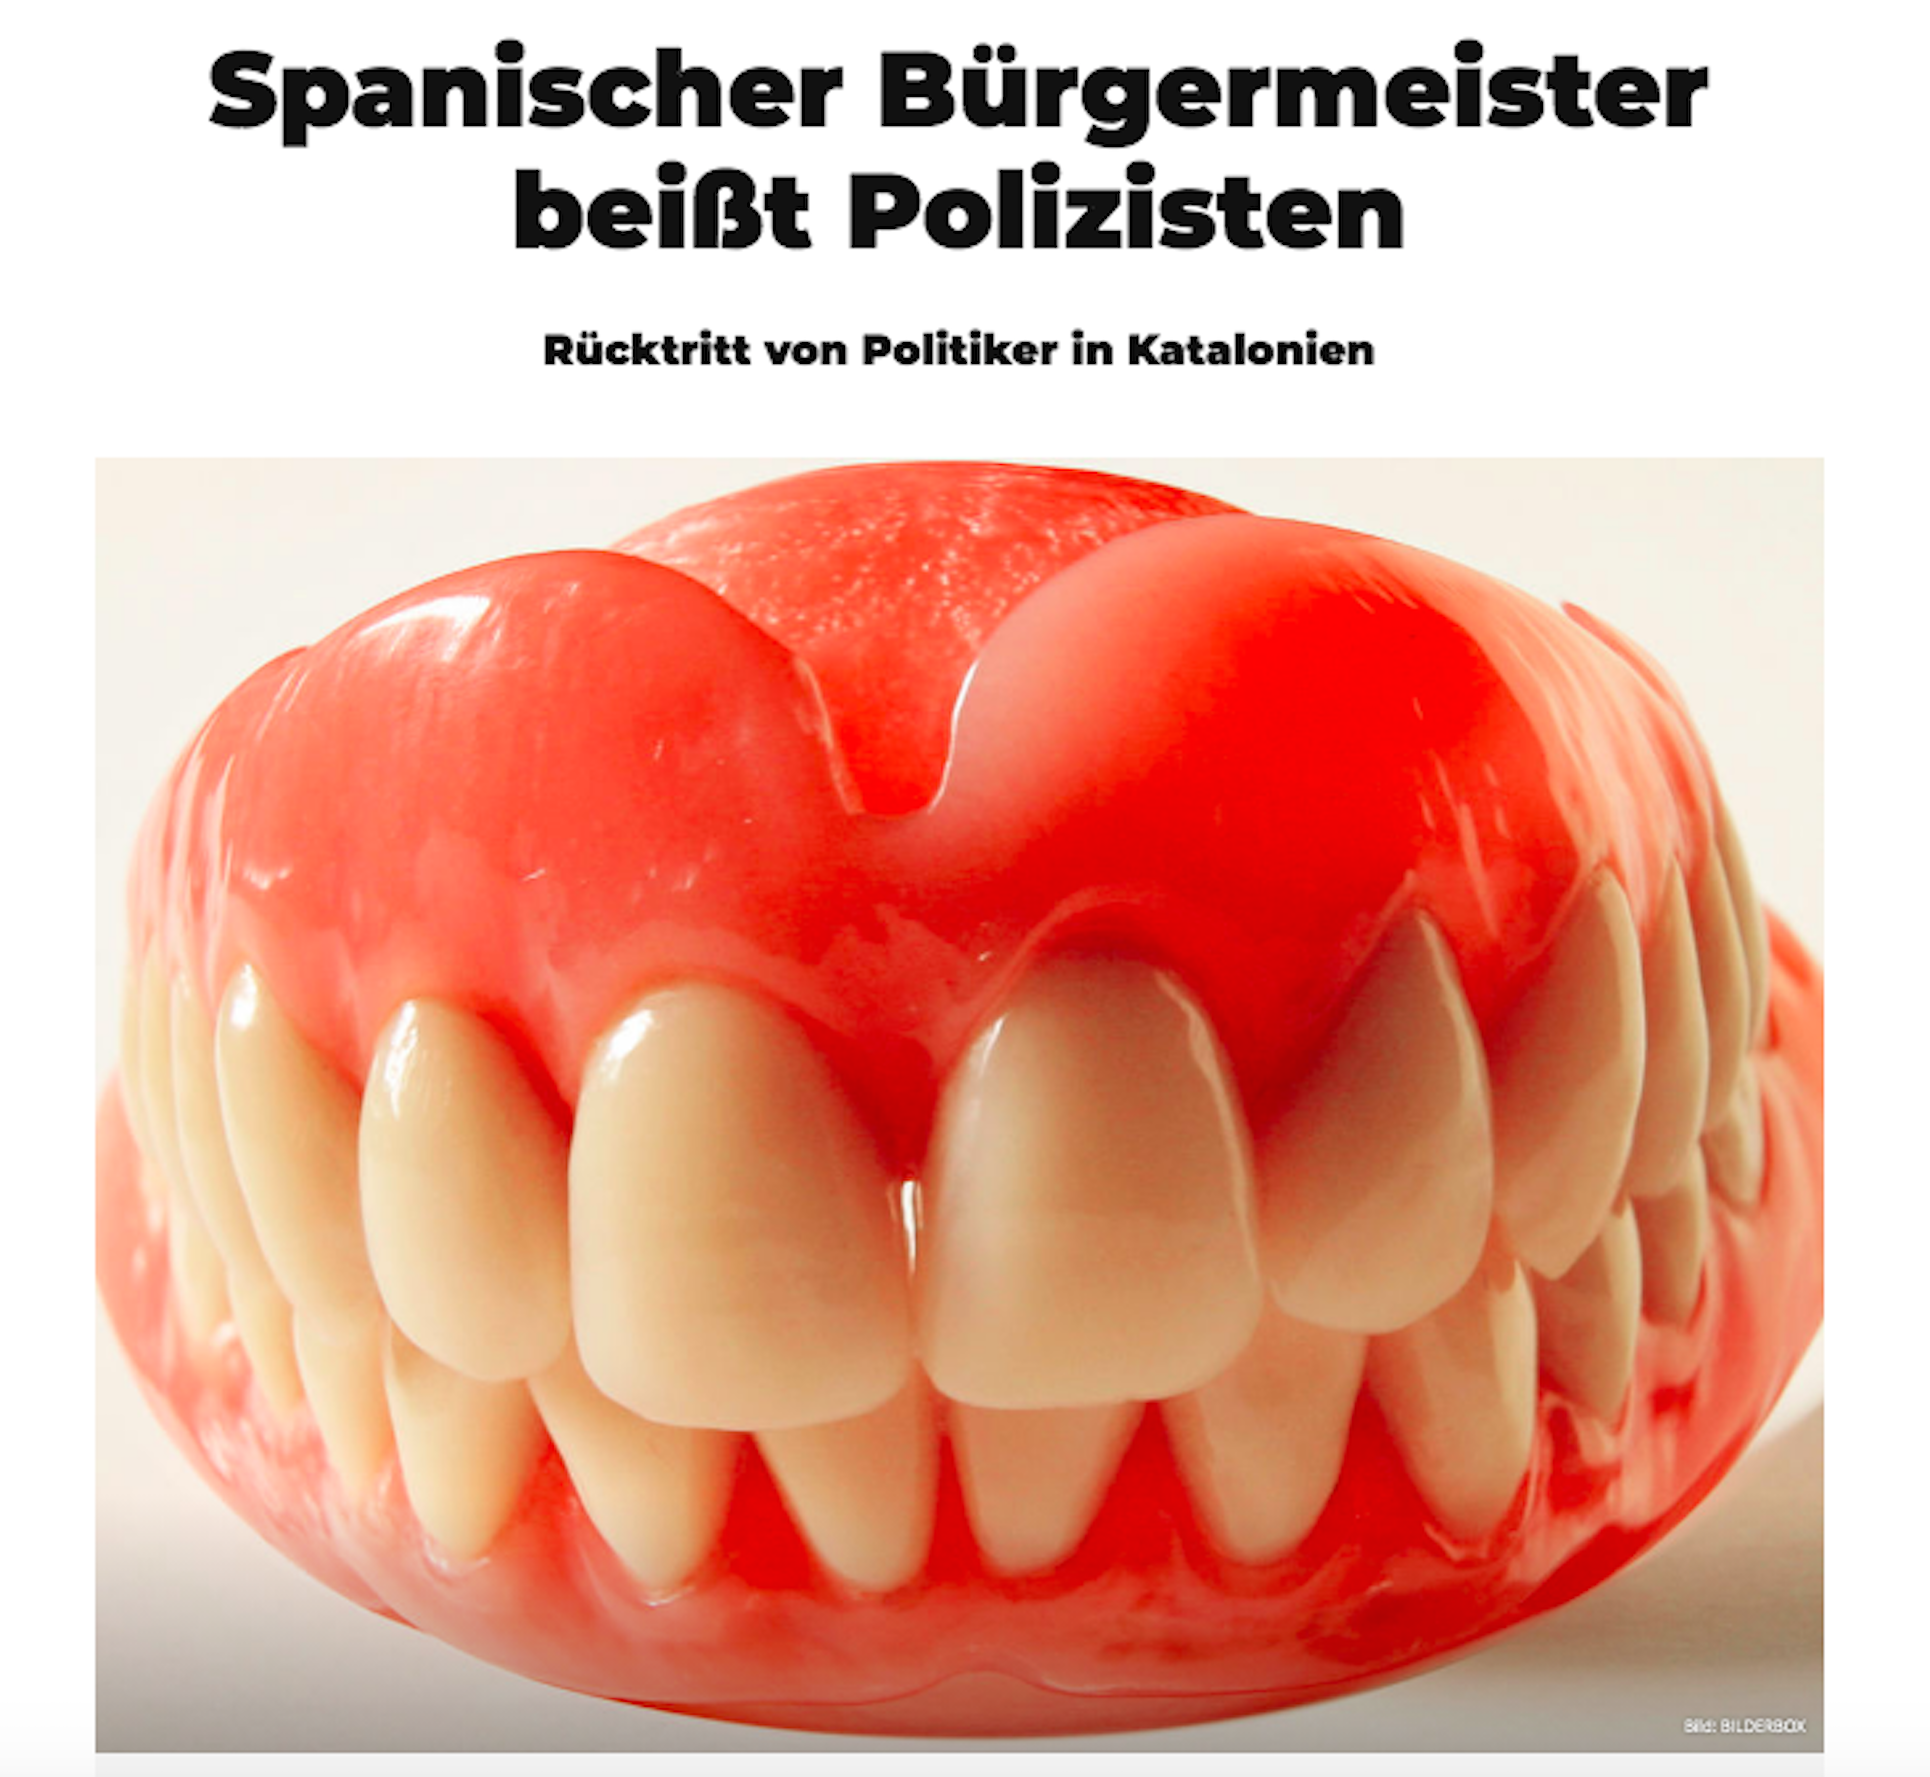 El mordisco del exalcalde de Badalona llega a la prensa germánica